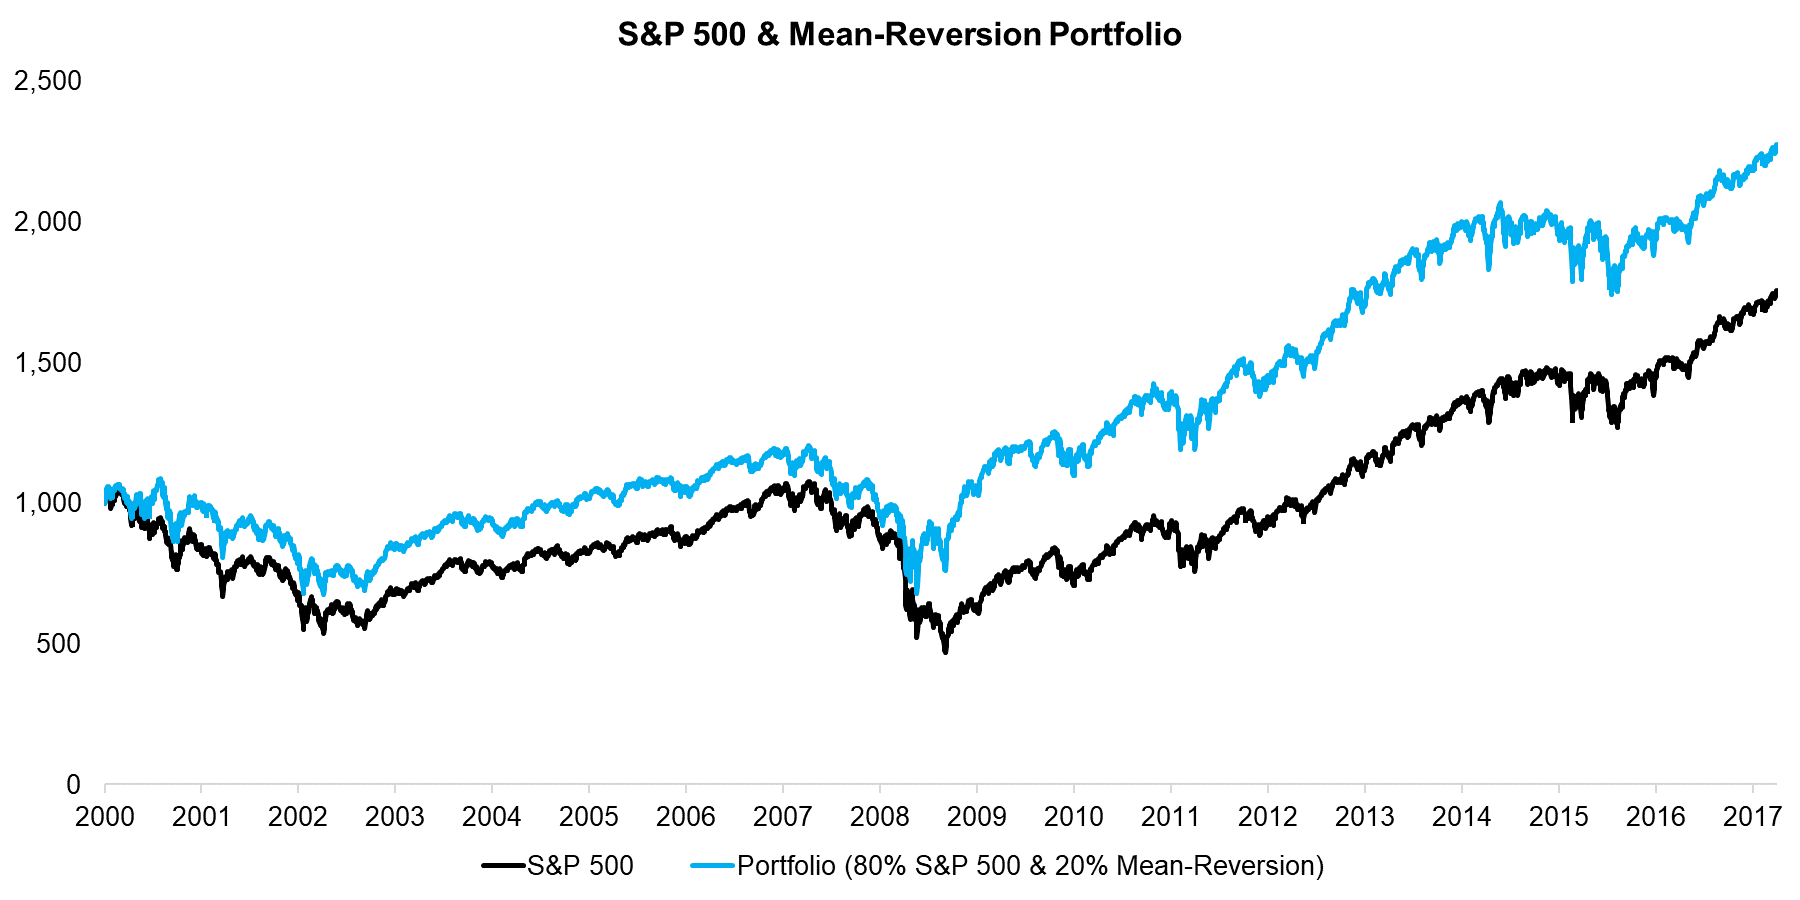 S&P 500 & Mean-Reversion Portfolio